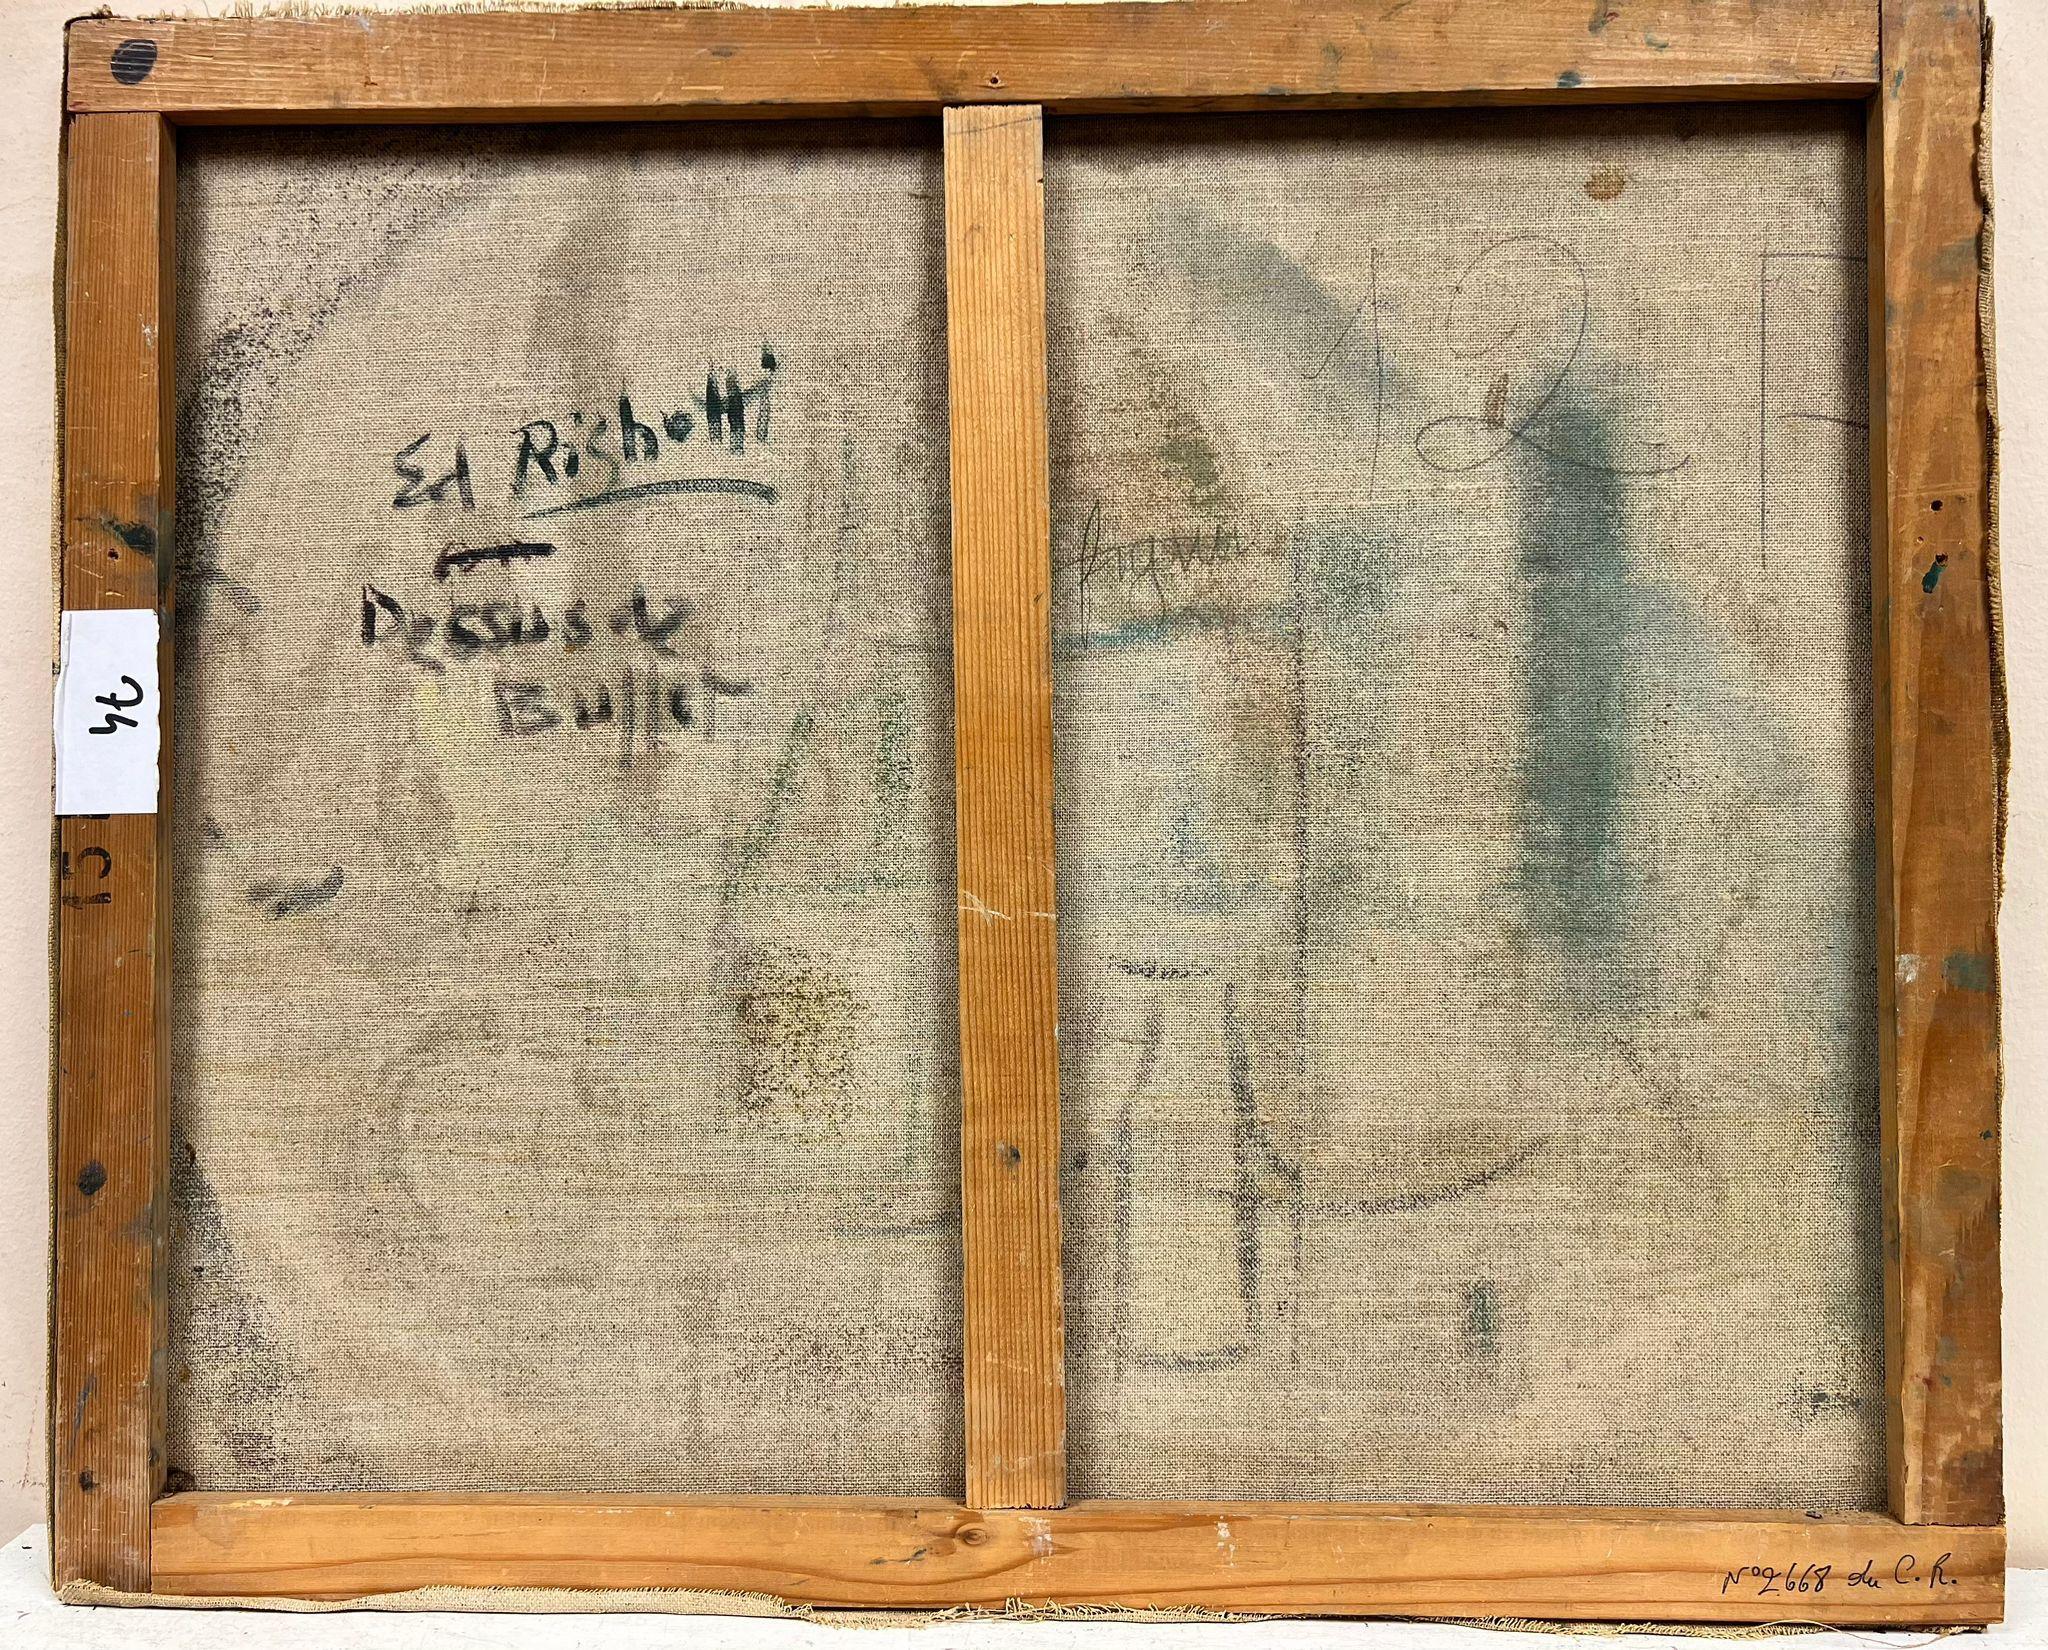 Nature morte
signé par Édouard Righetti (1924-2001)
Inscrit au verso
huile sur toile signée, magnifiquement peinte.
en bon état mais avec des rayures superficielles
taille : 21 x pouces x 25.5 pouces, sans cadre
provenance : toutes les peintures de